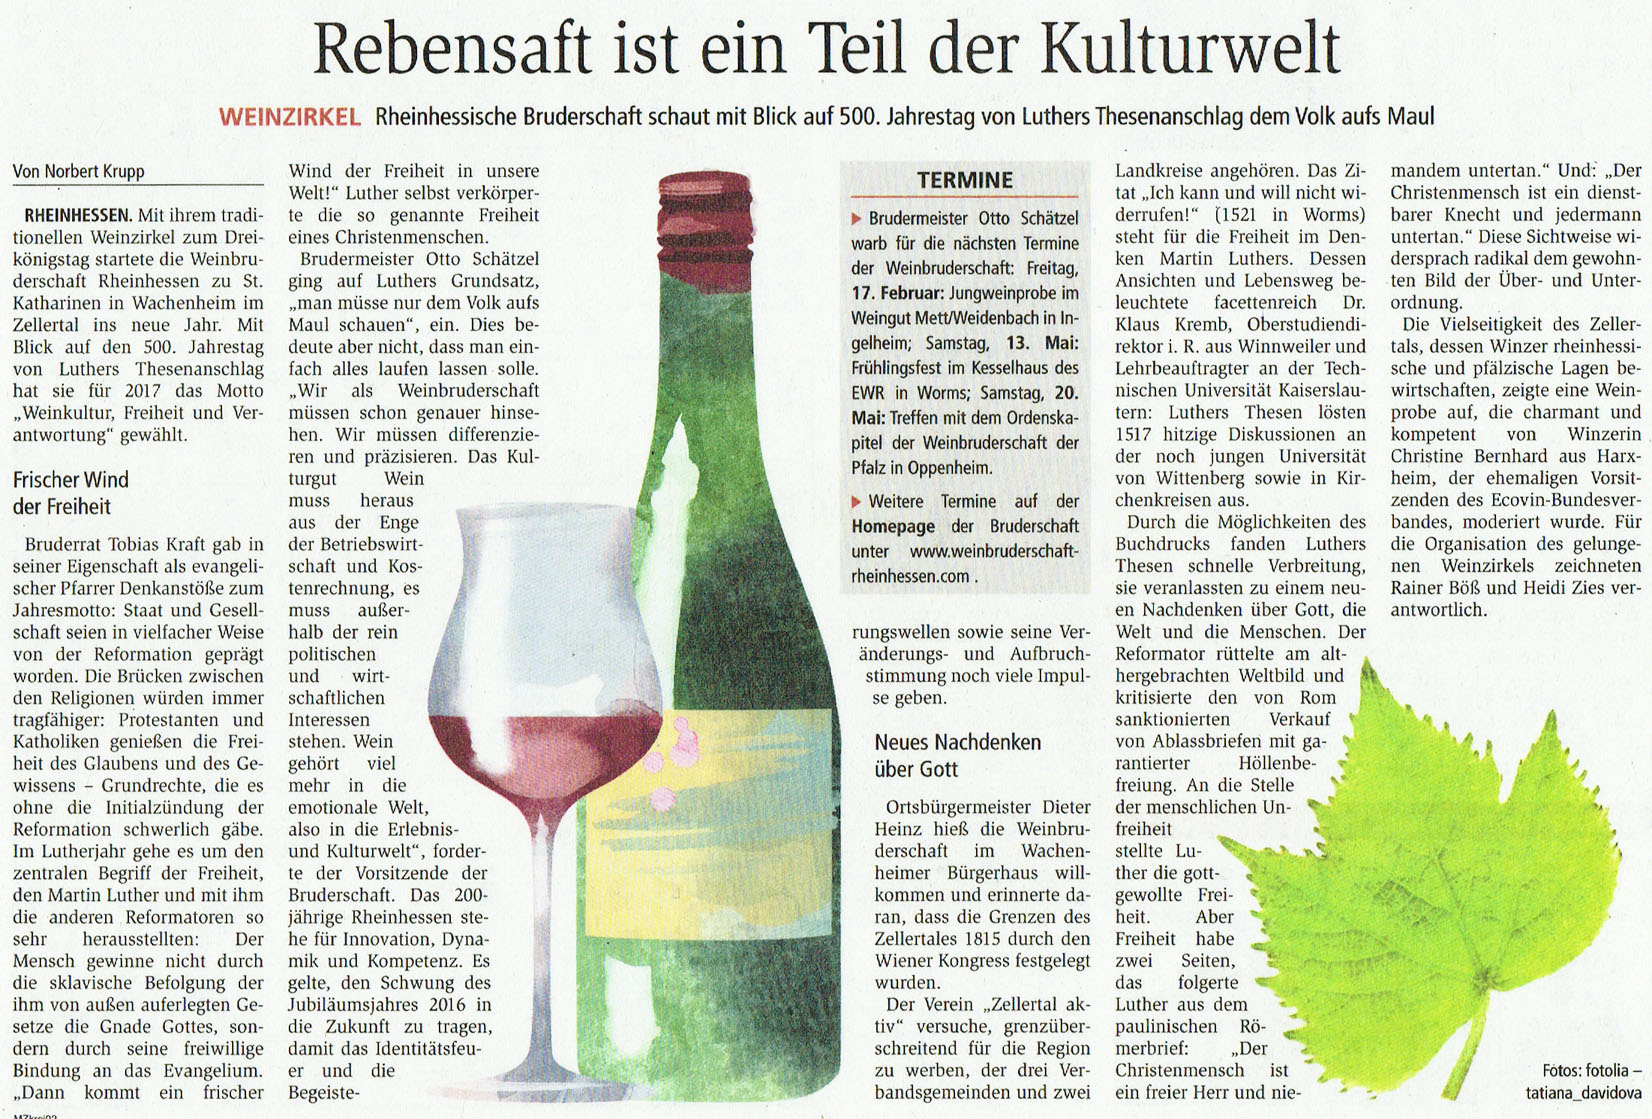 Artikel aus der Mainzer Allgemeinen Zeitung